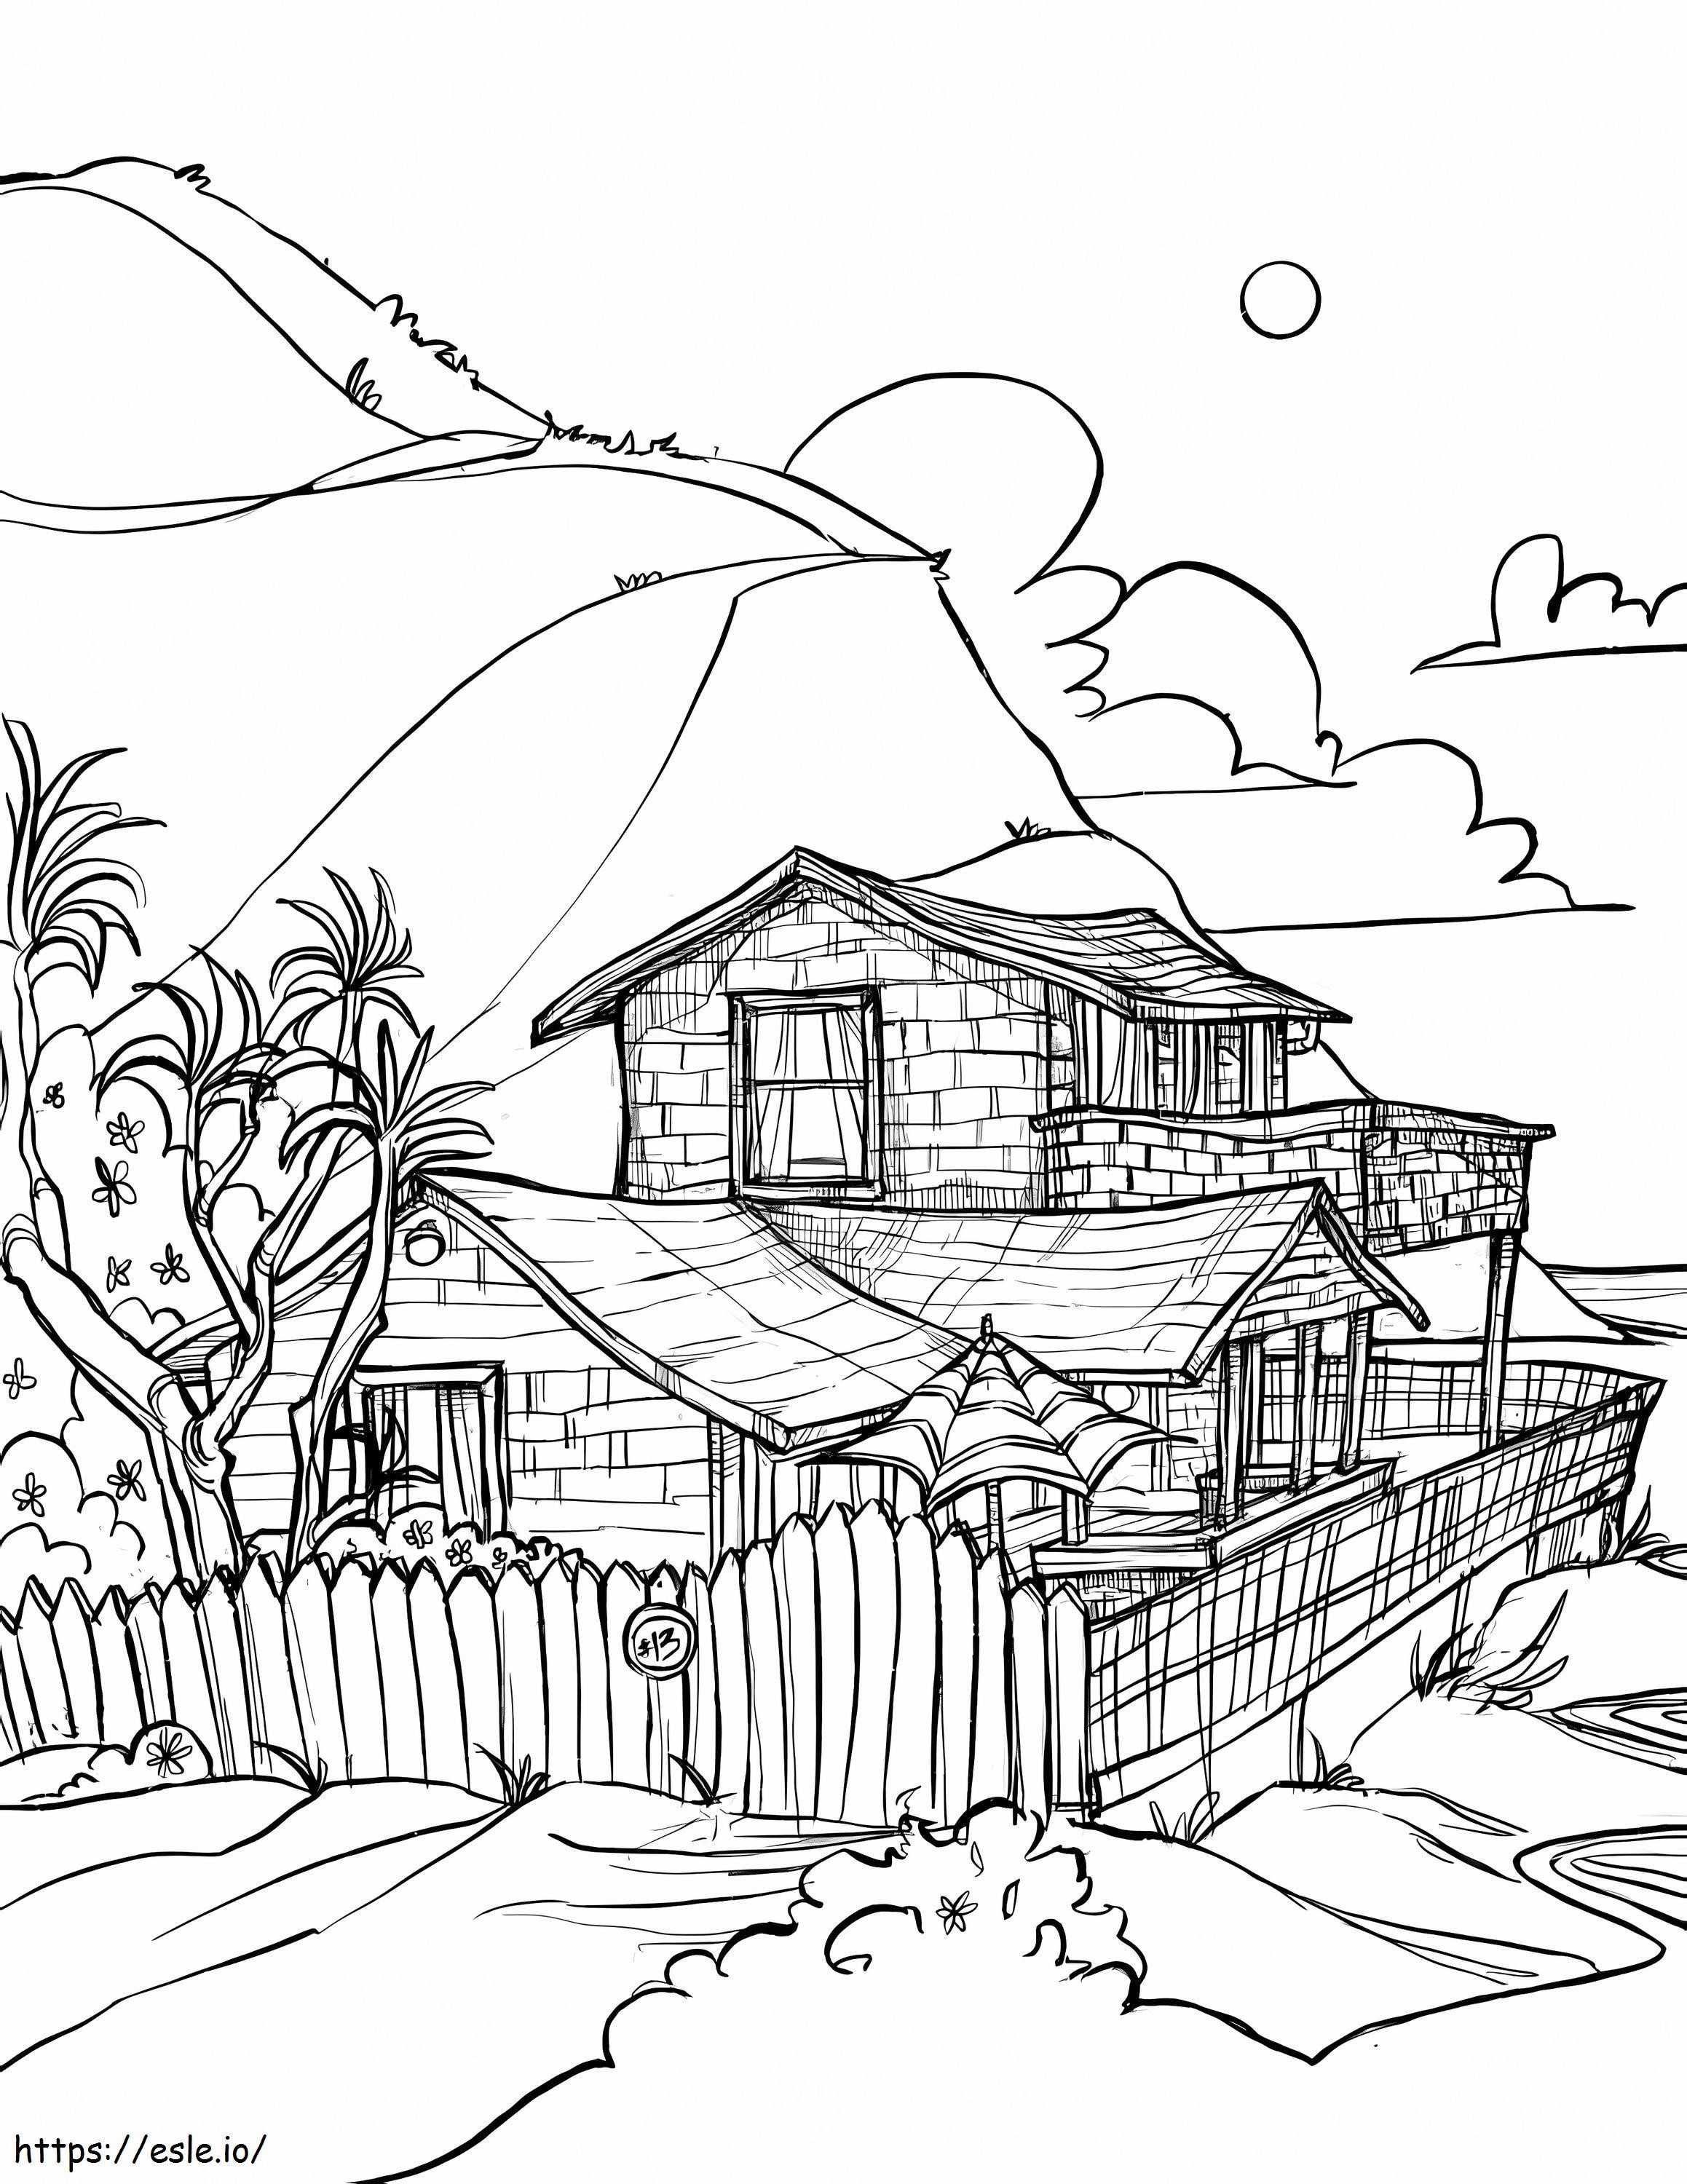 Menggambar Rumah Di Pantai Gambar Mewarnai